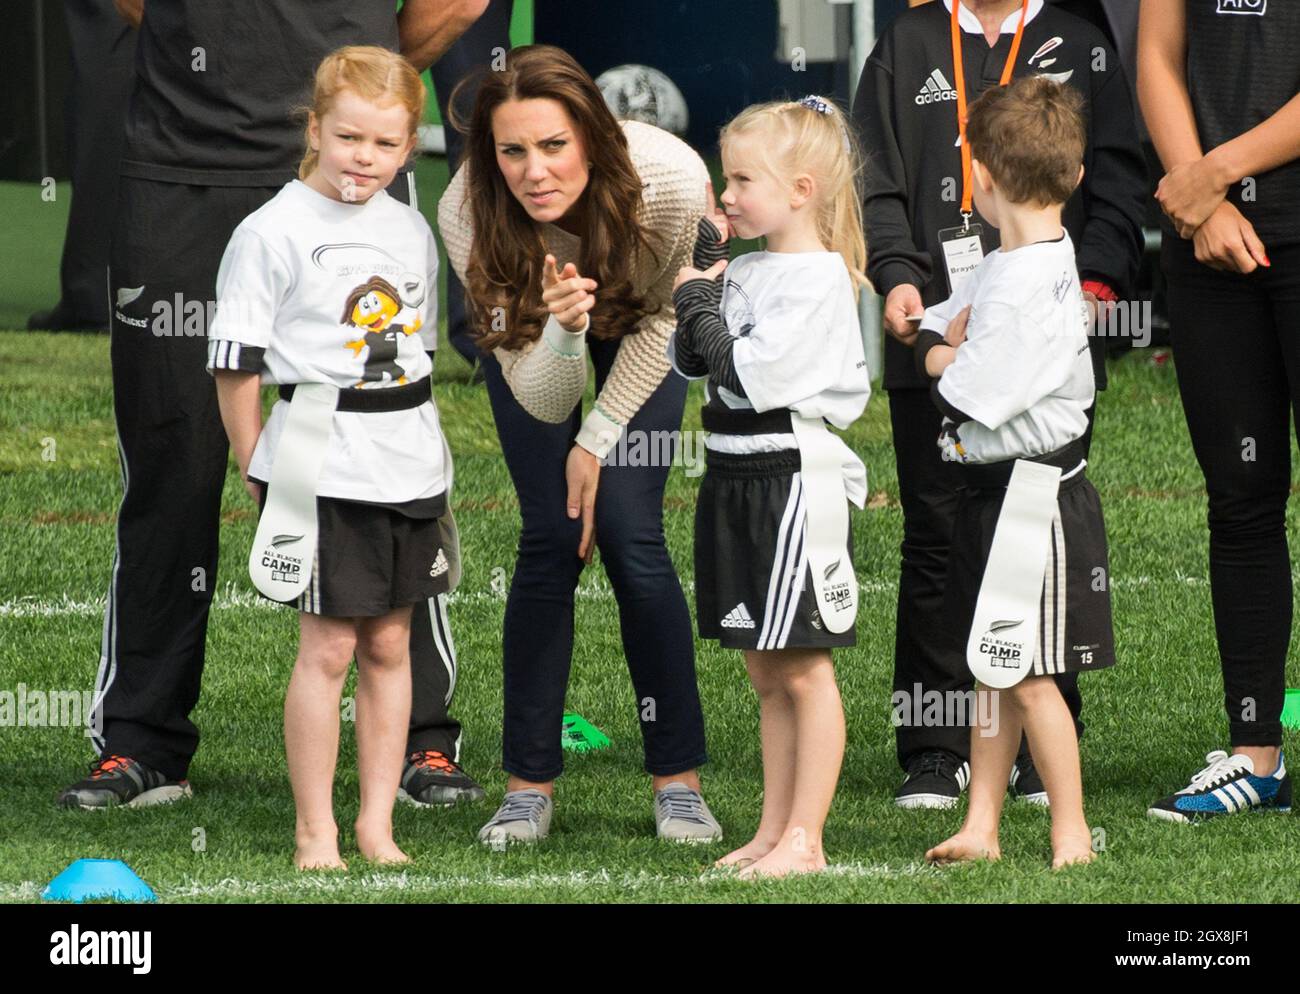 Catherine, Duchesse de Cambridge, participe à un tournoi de rugby de jeunes joueurs au stade Forsyth Barr à Dunedin, en Nouvelle-Zélande, le 13 avril 2014. Banque D'Images